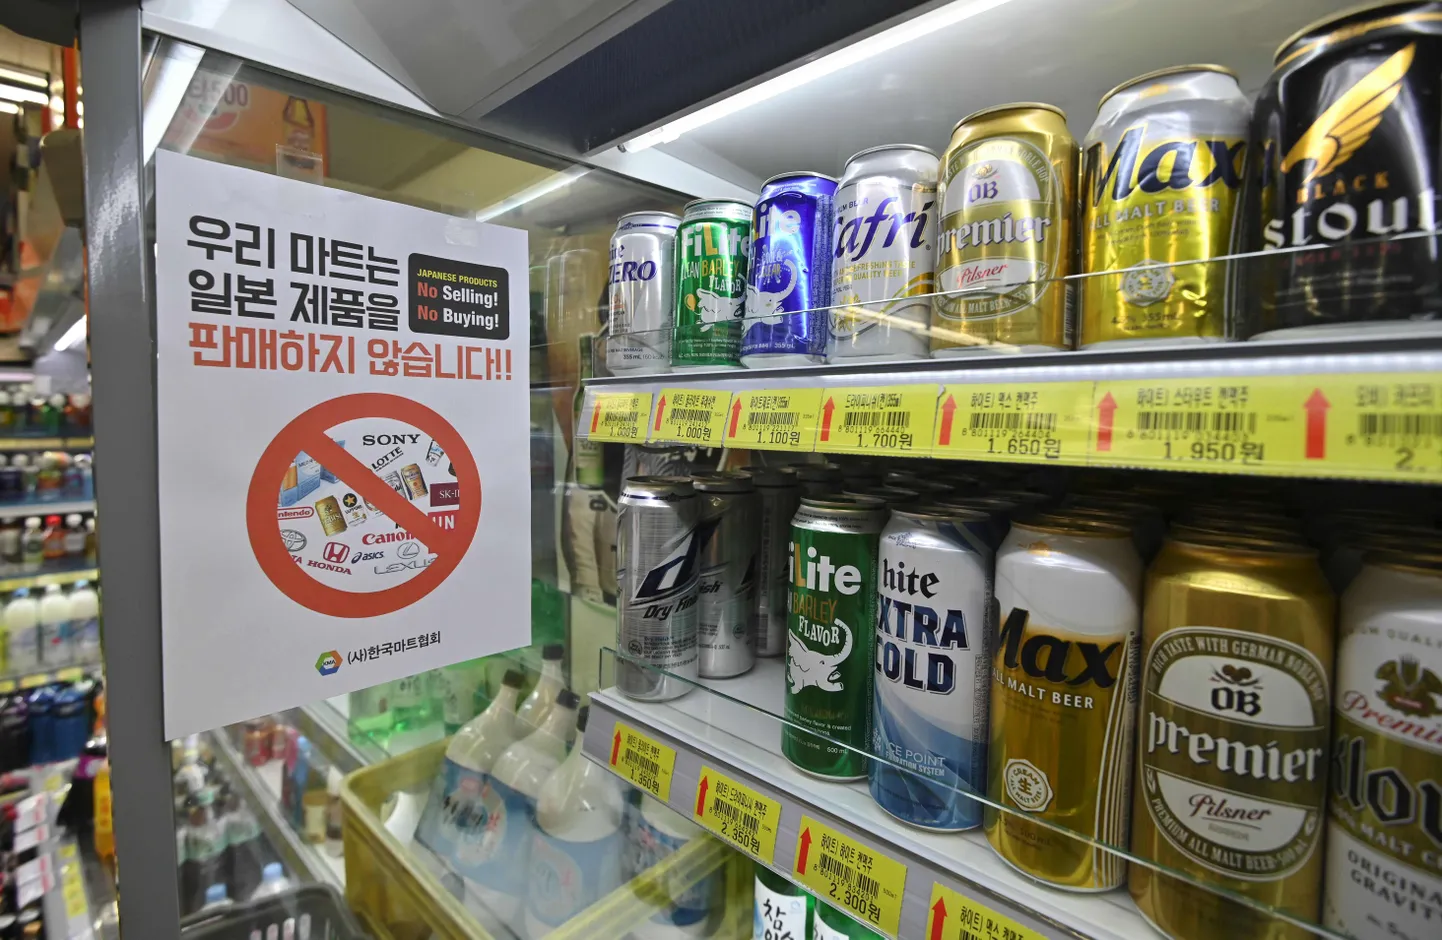 Pilt Lõuna-Korea poe õlleletist 17. juulil koos sildiga "Meie Jaapani tooteid ei müü!".